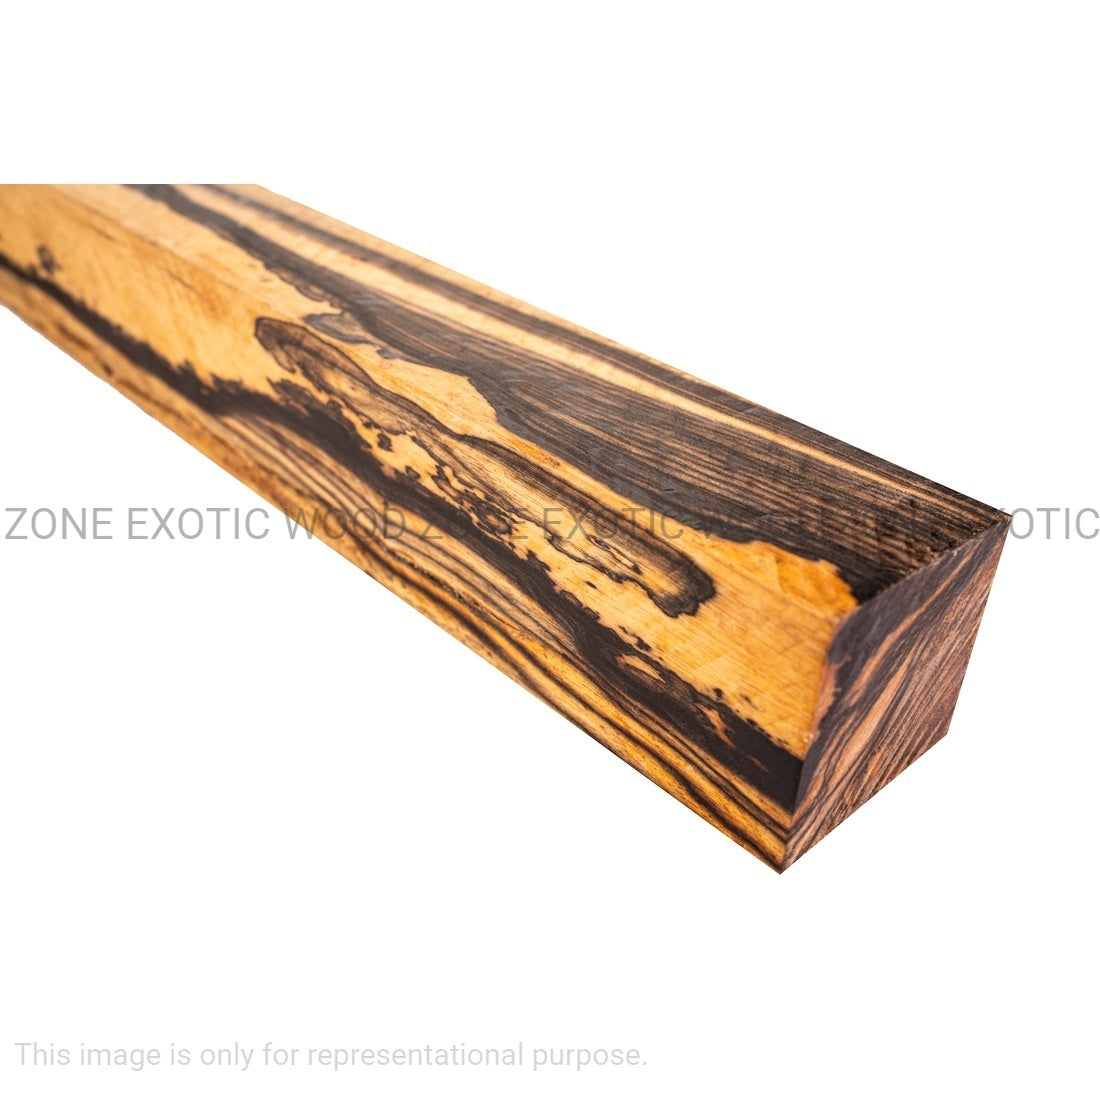 Black and White Ebony Turning Blanks - Exotic Wood Zone - Buy online Across USA 